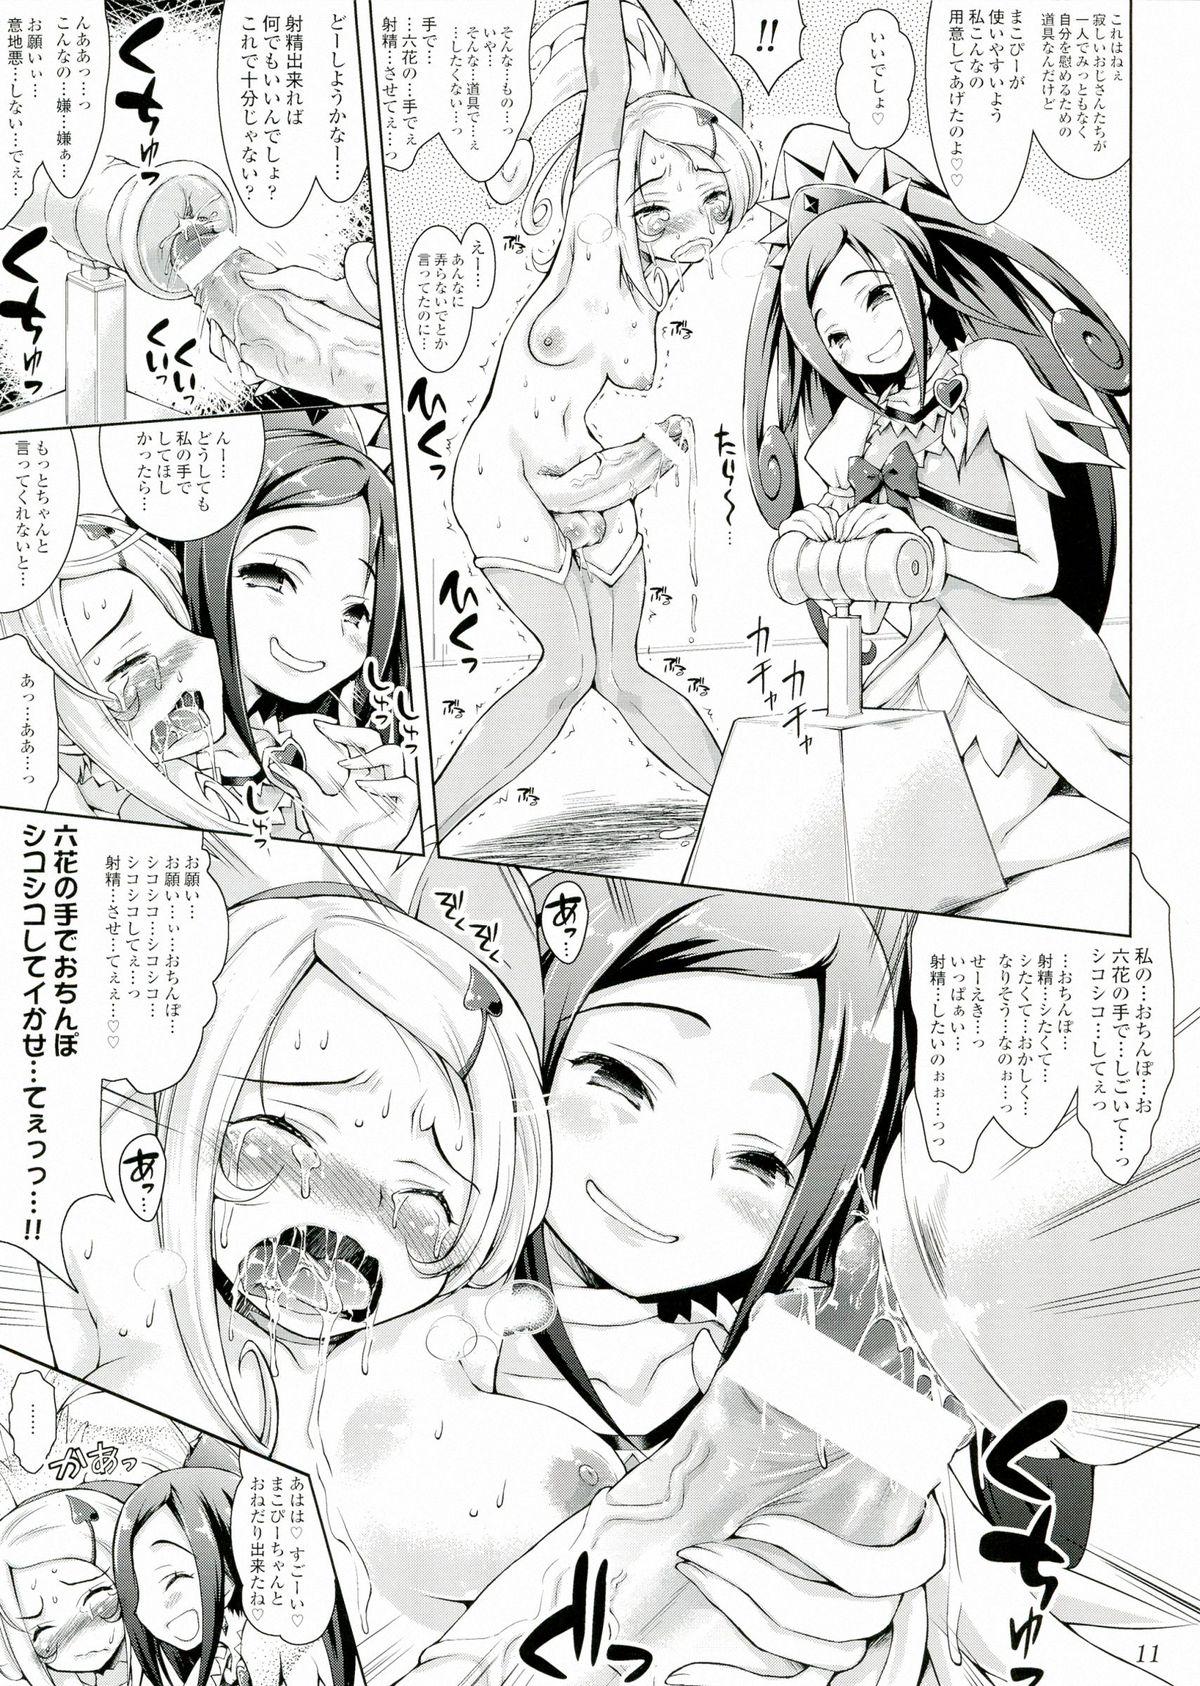 Lesbian Makopi- ni Haeteta Chinpo wa Rikka ni Ijime rareru to Nando demo Shasei shichau no - Dokidoki precure Creamy - Page 11